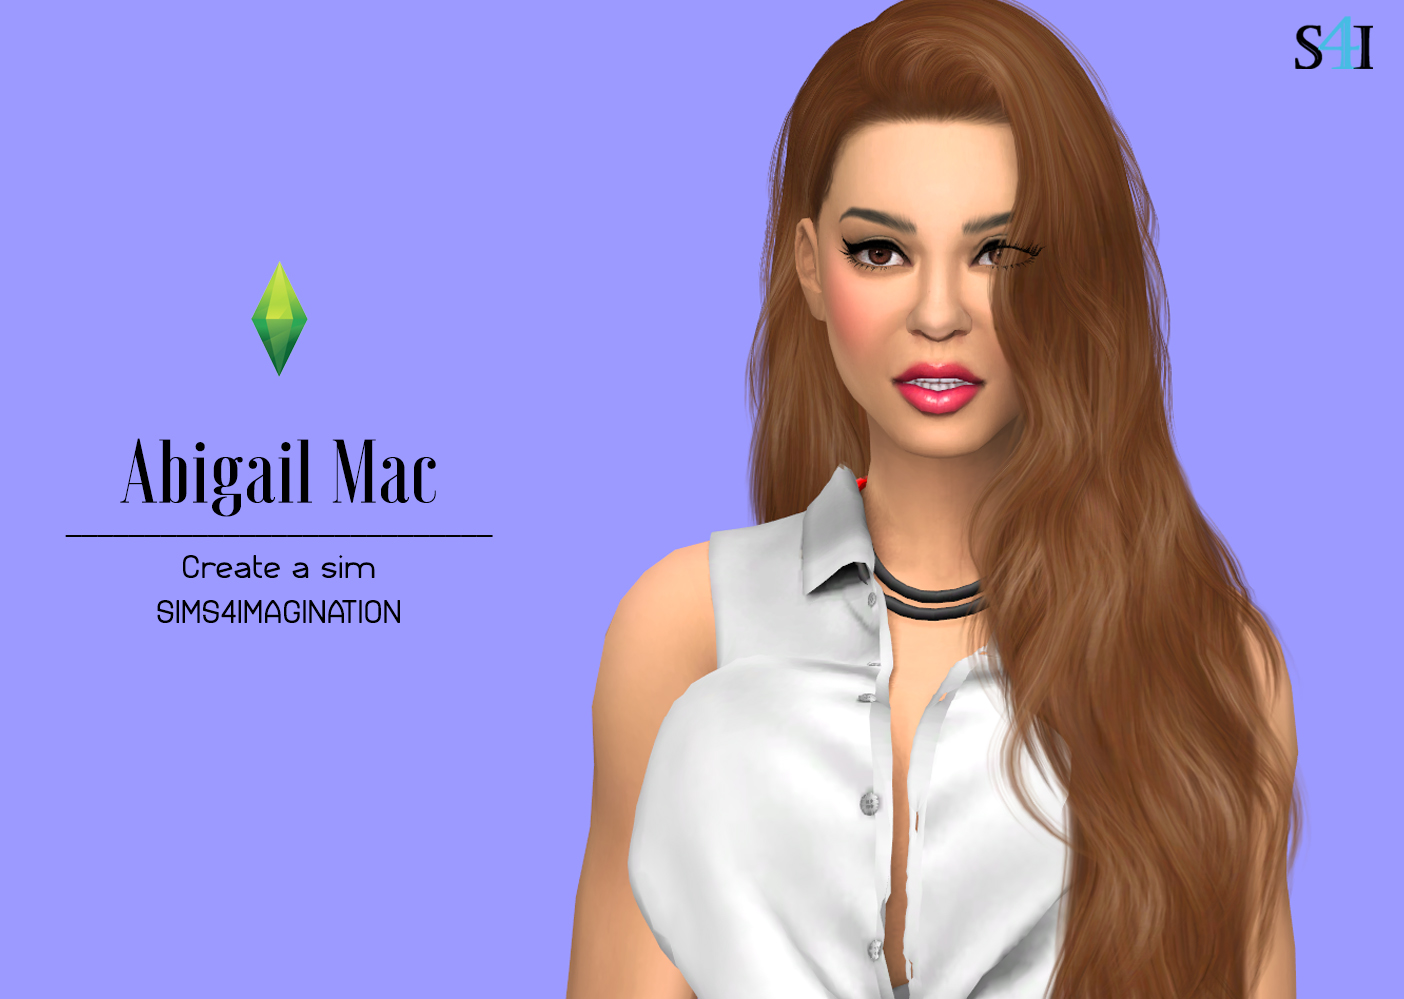 My Sims 4 CAS: Abigail Mac - Imagination Sims 4 CAS